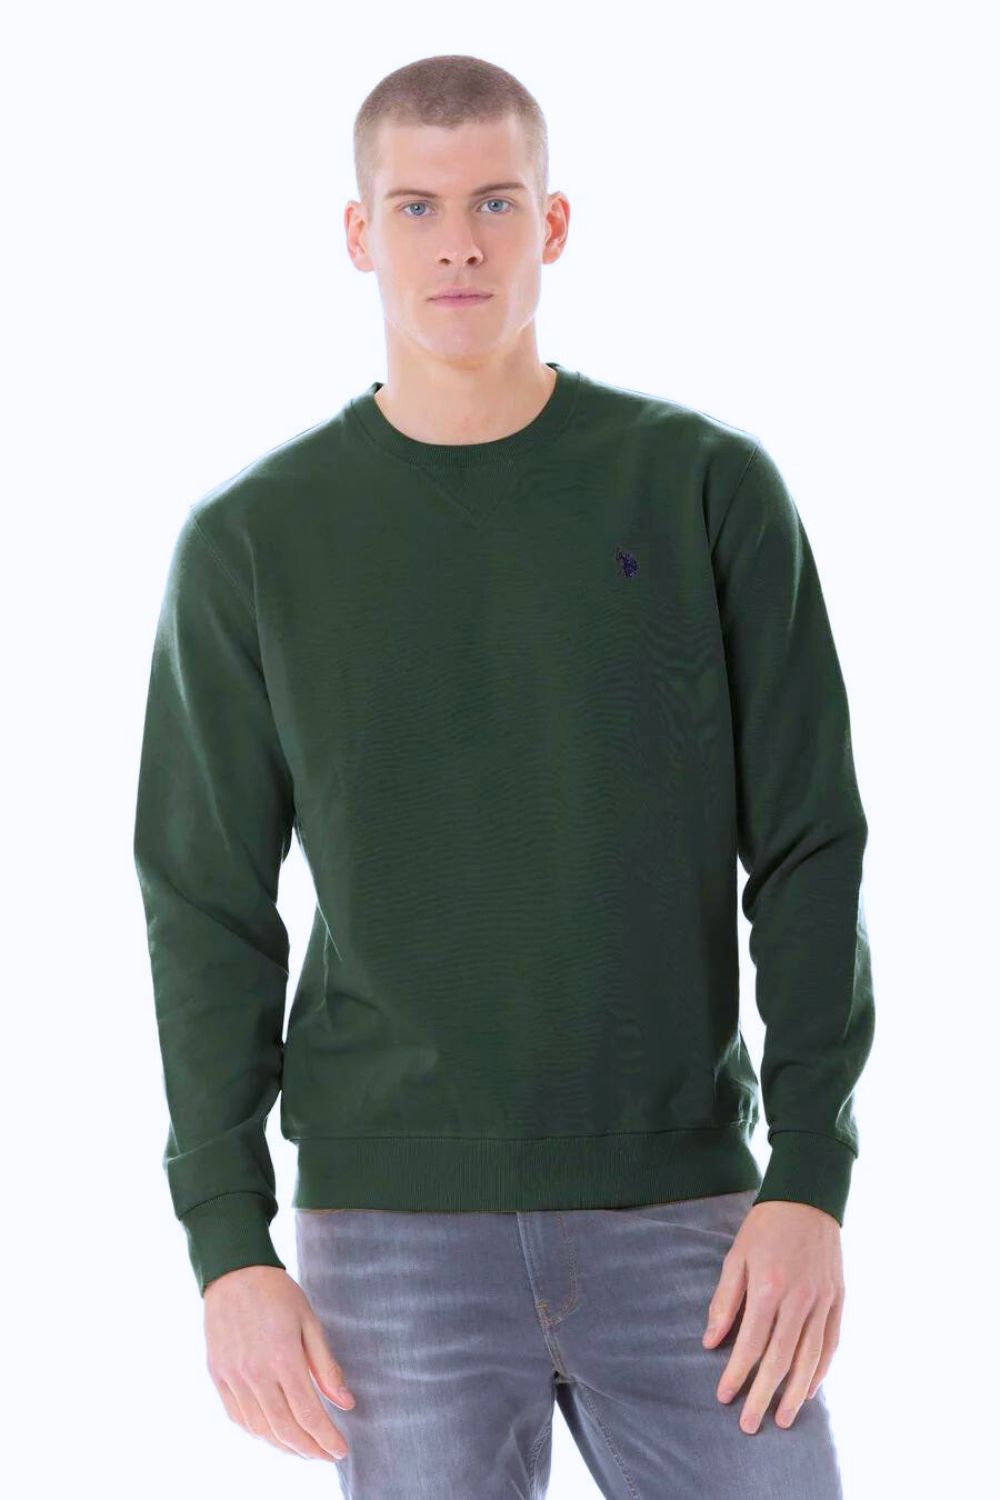 U.S. Polo Assn. Sweater - Hyper Shops